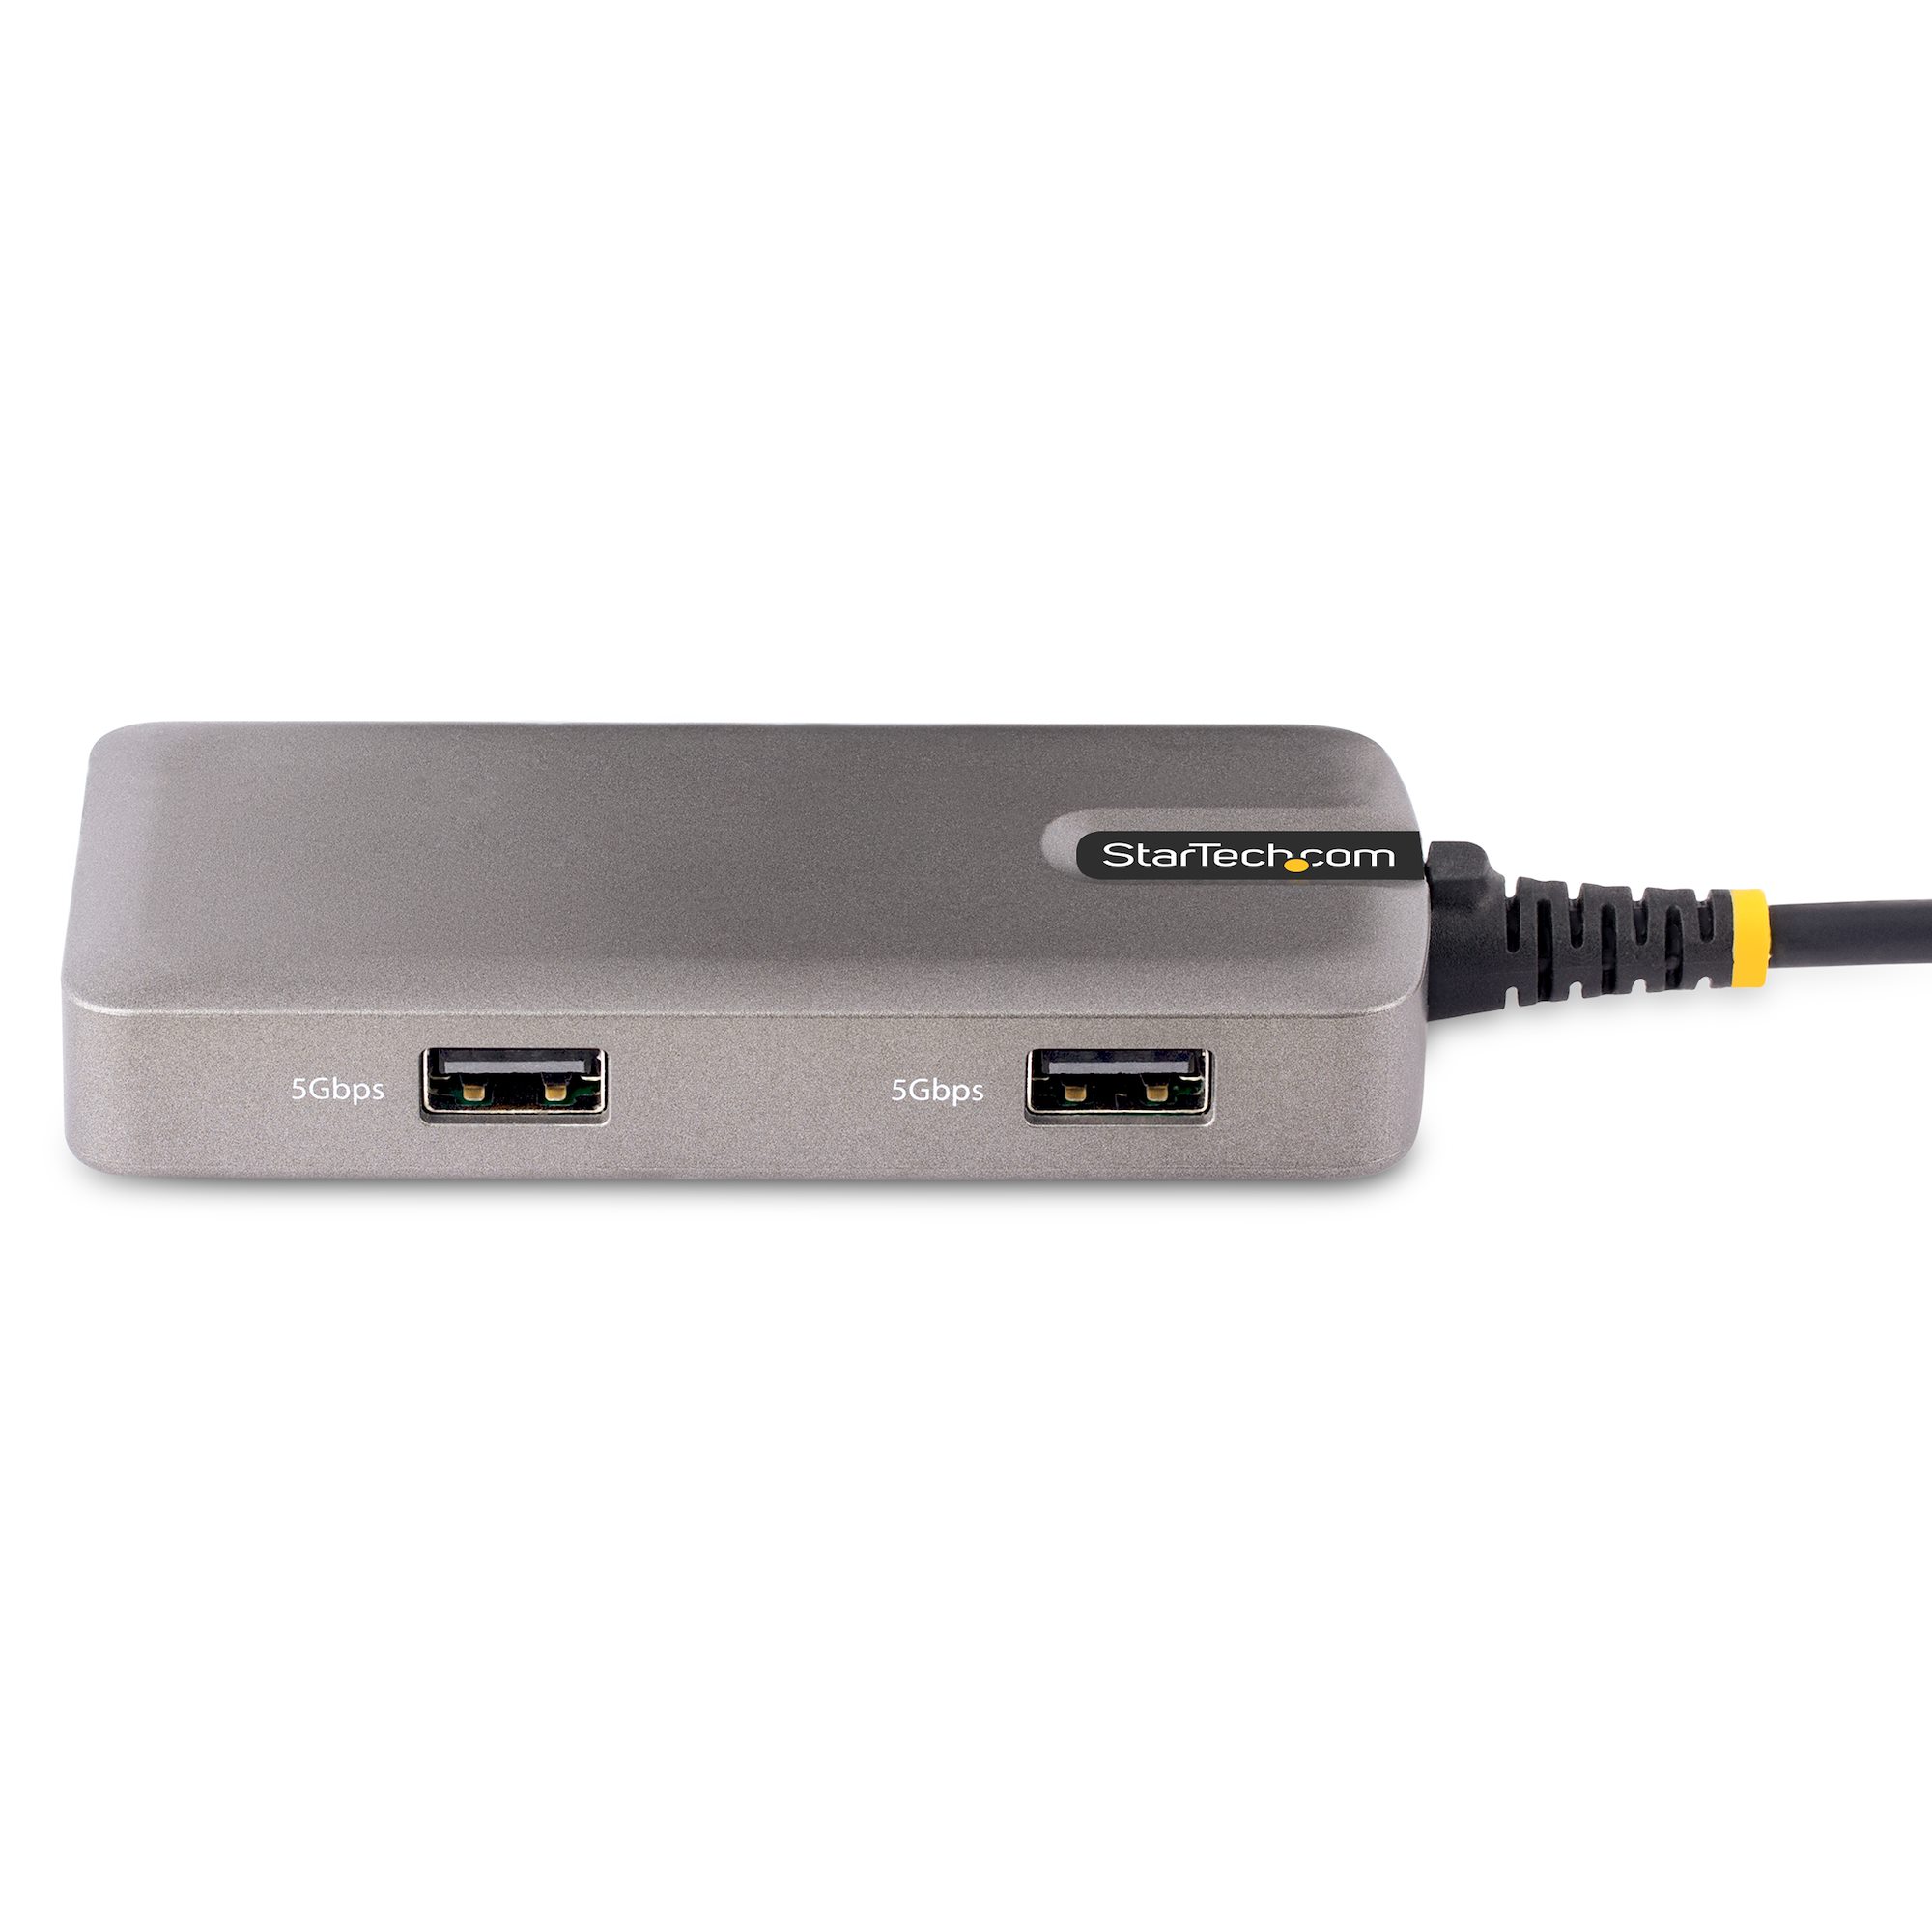 Ripley - ADAPTADOR USB C A DUAL HDMI MULTIPORT USB C HUB PARA